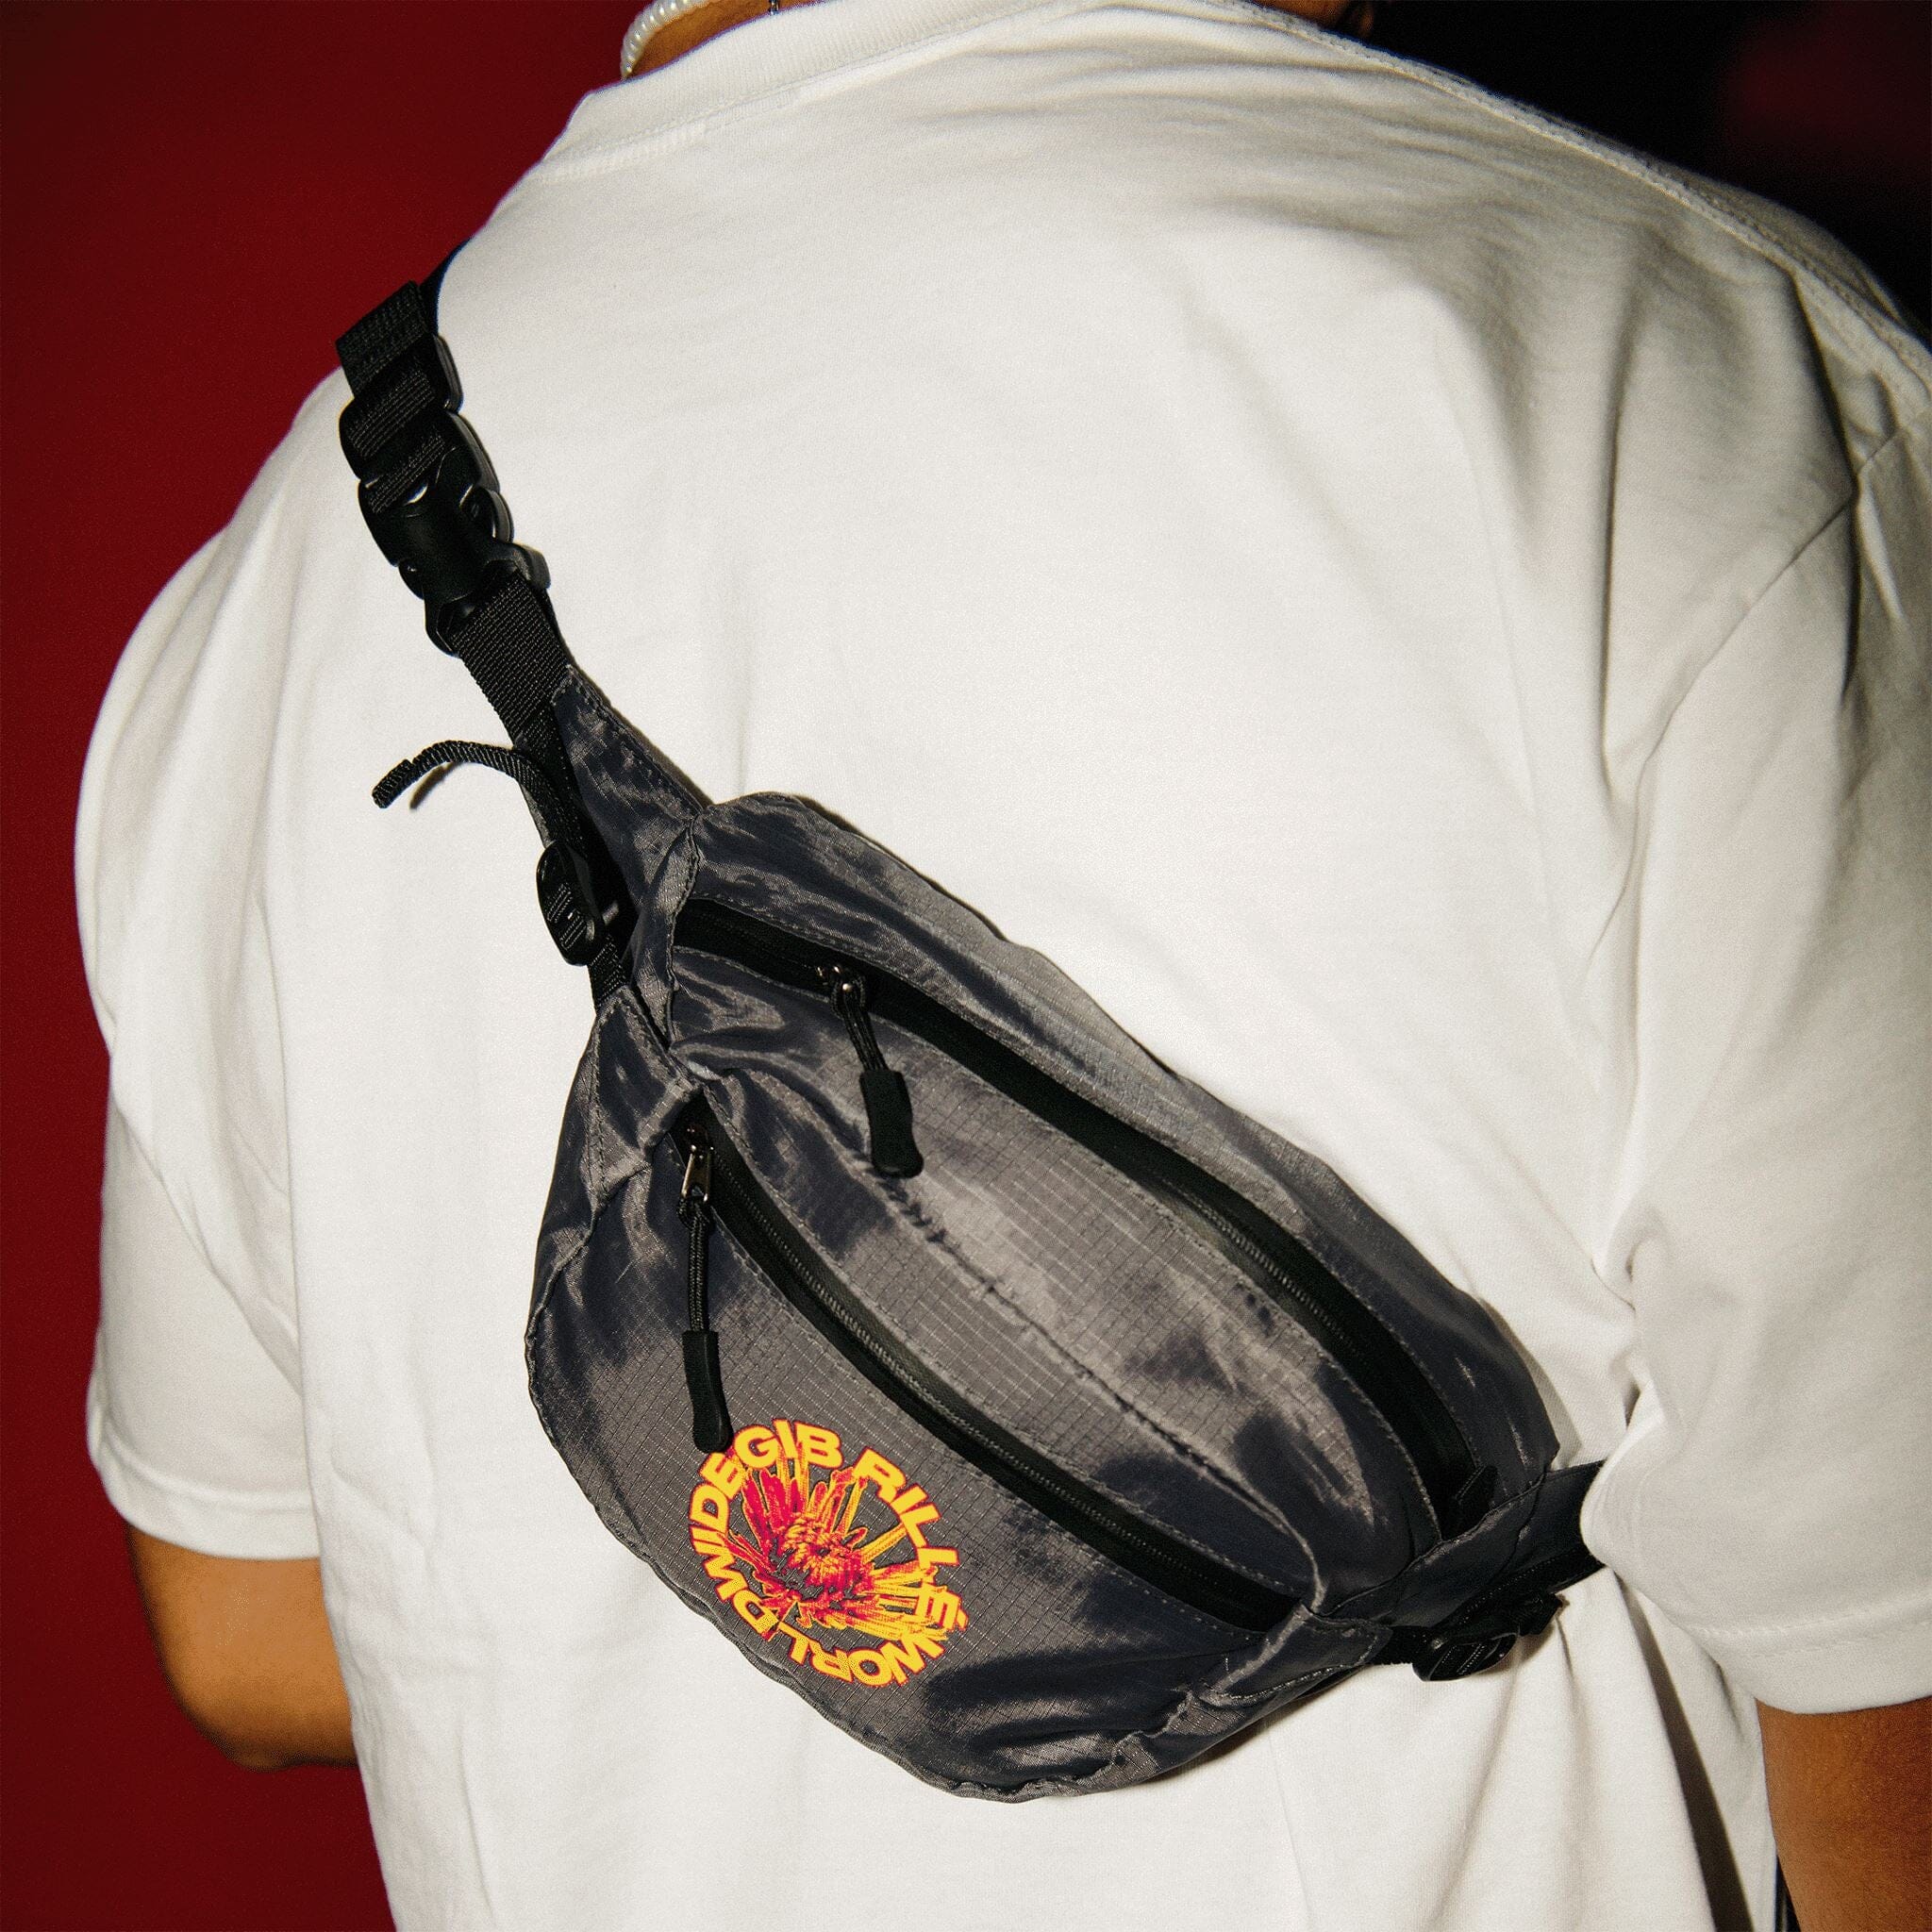 Gib Rillé Hipbag Tasche in Grau auf dem Rücken getragen Ansichtbild